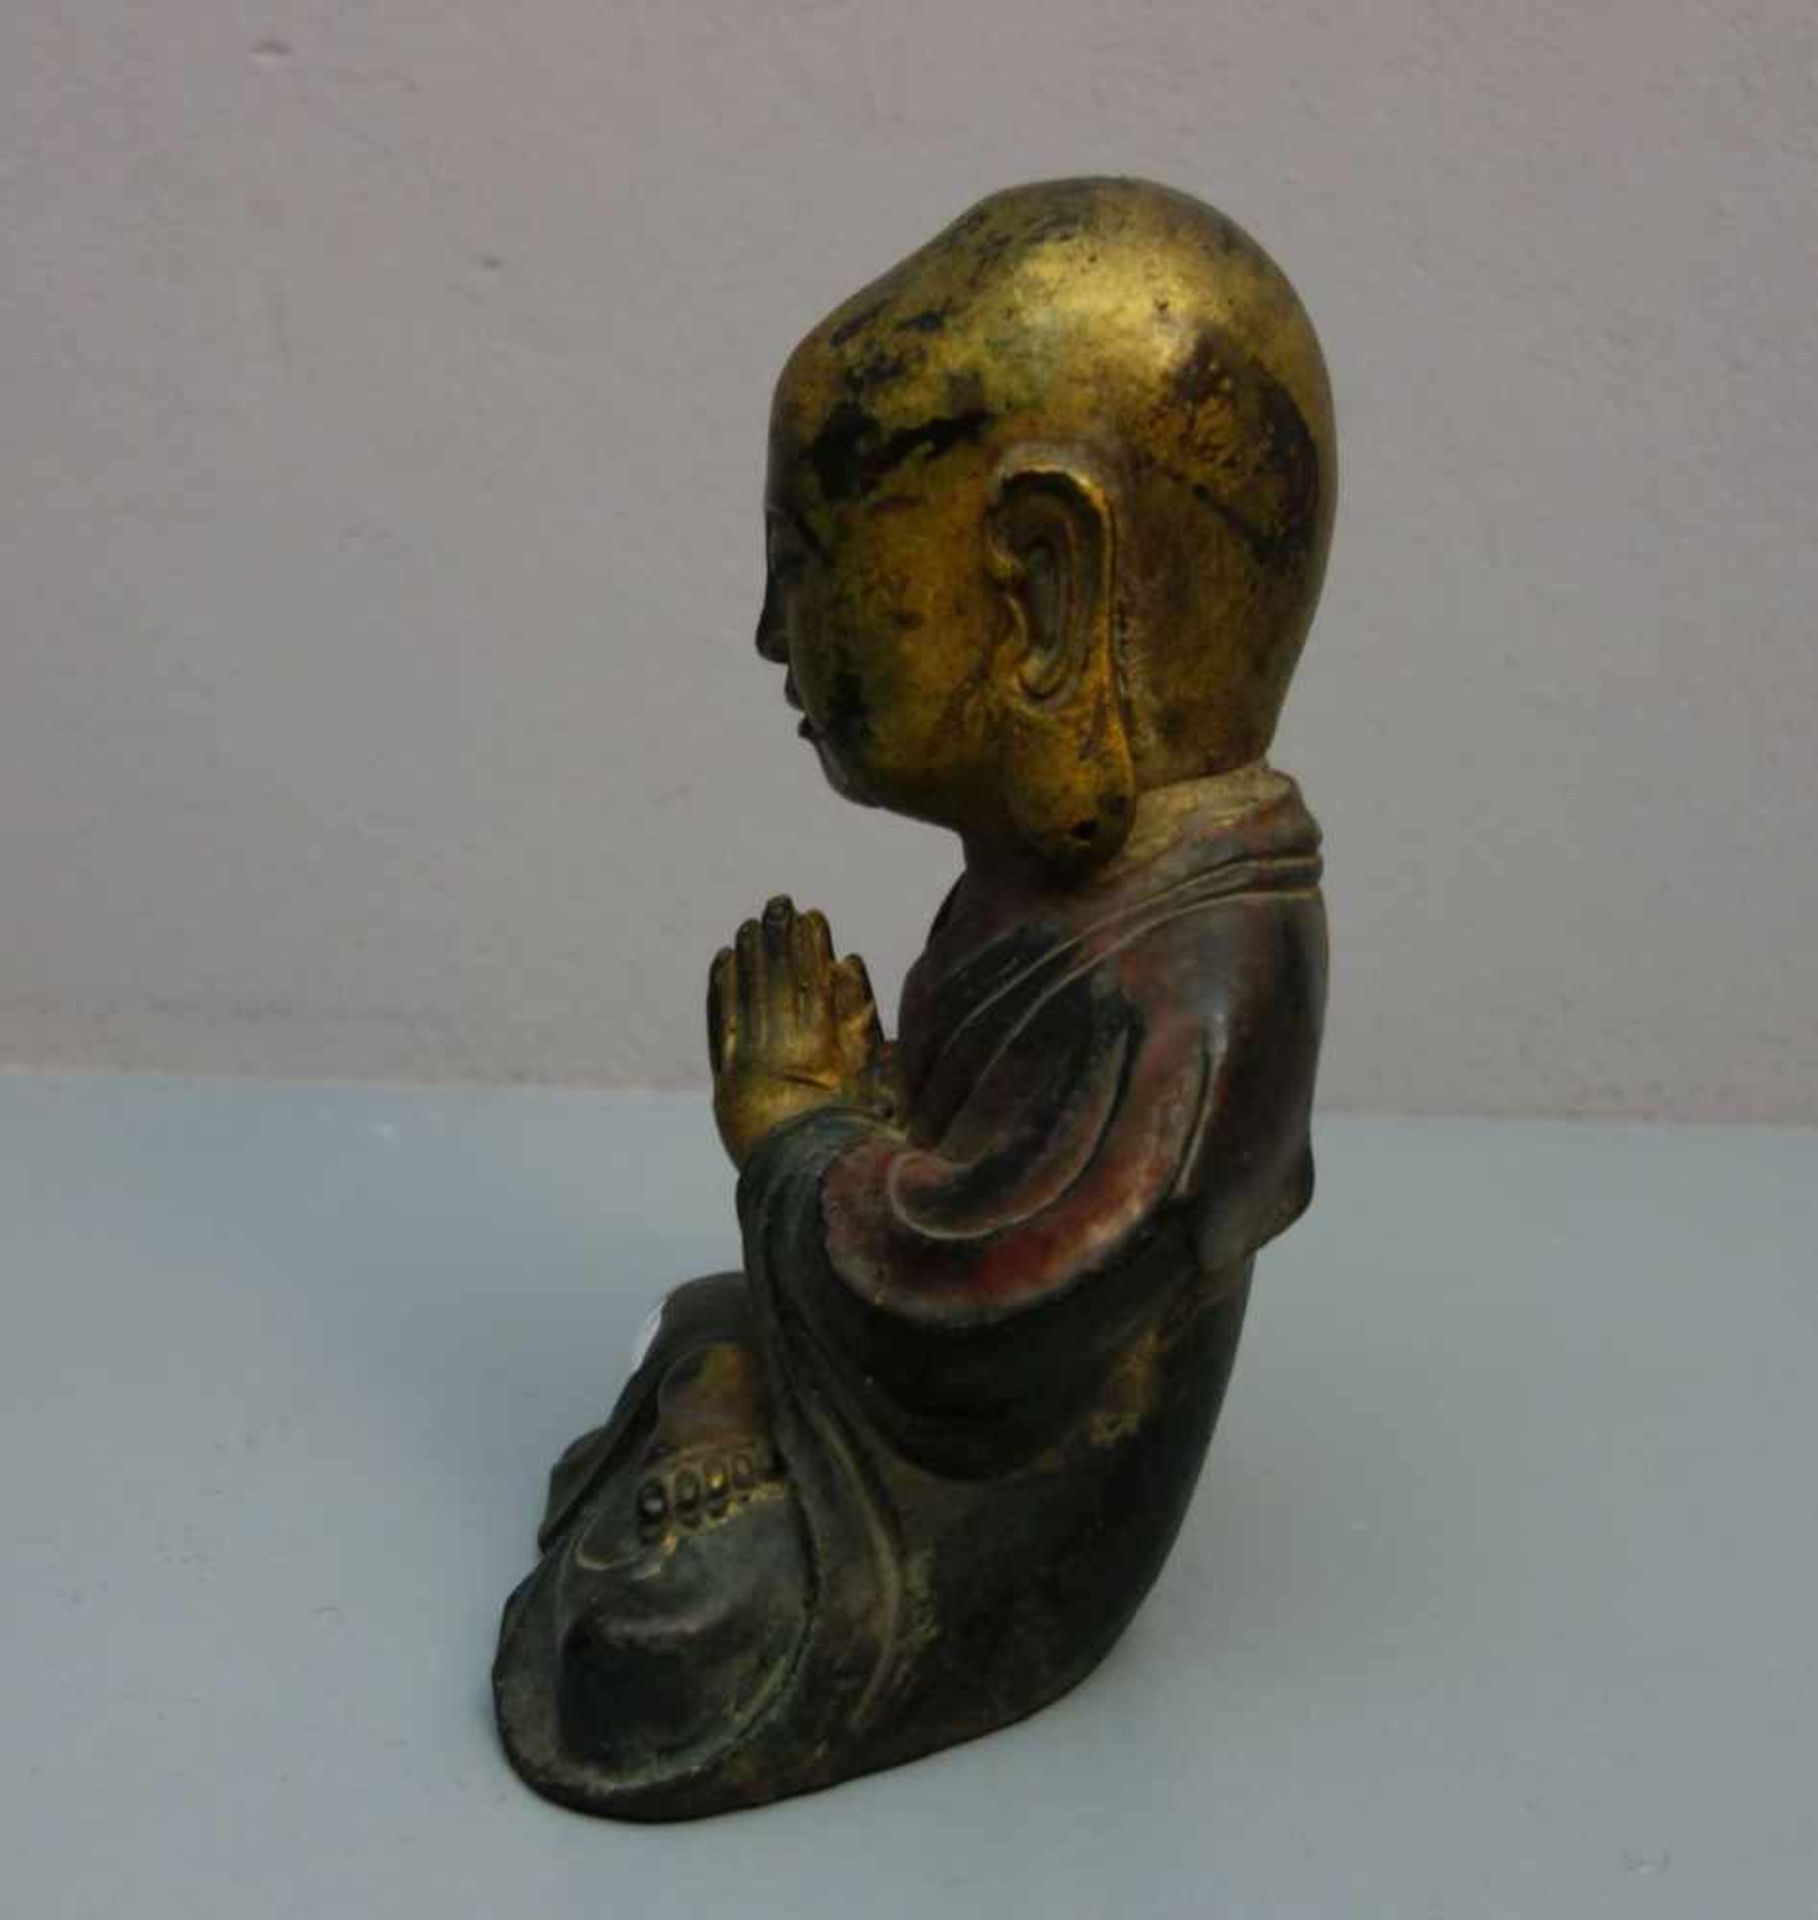 LACHENDER BUDDHA / Glücksbuddha, Bronze, grün, rot und gold patiniert. Im Lotussitz mit - Image 2 of 4